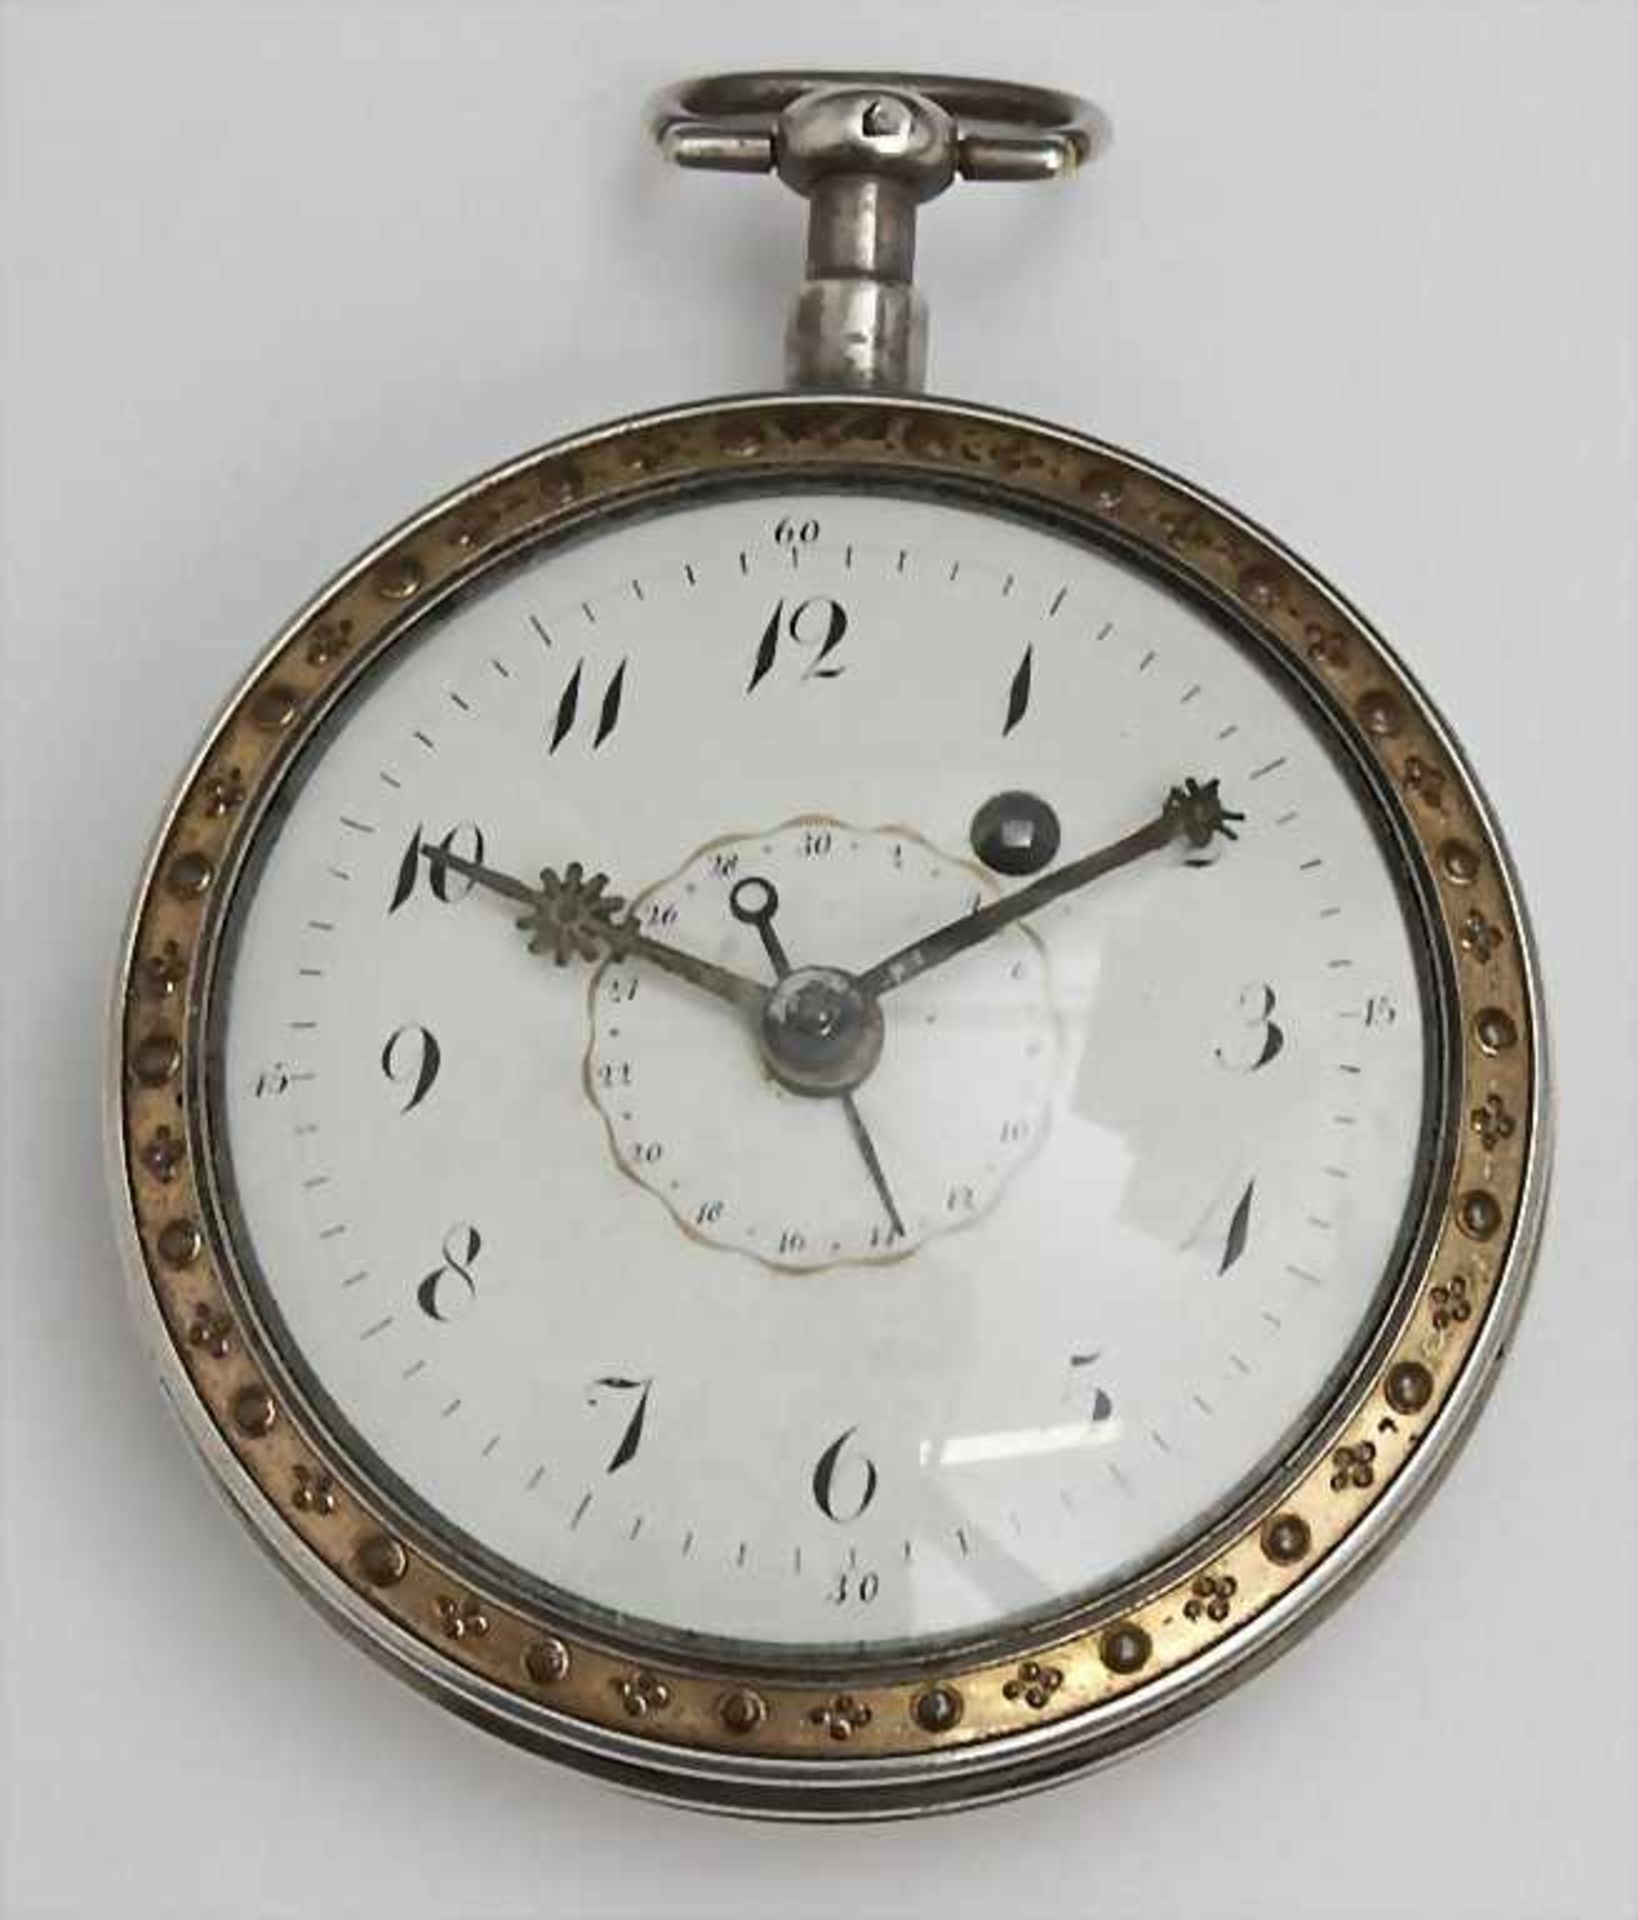 Spindel-HTU/Gents Silver Pocket Watch, Boudard a Clamecy, um 1820 Silbergehäuse gepunzt, mit